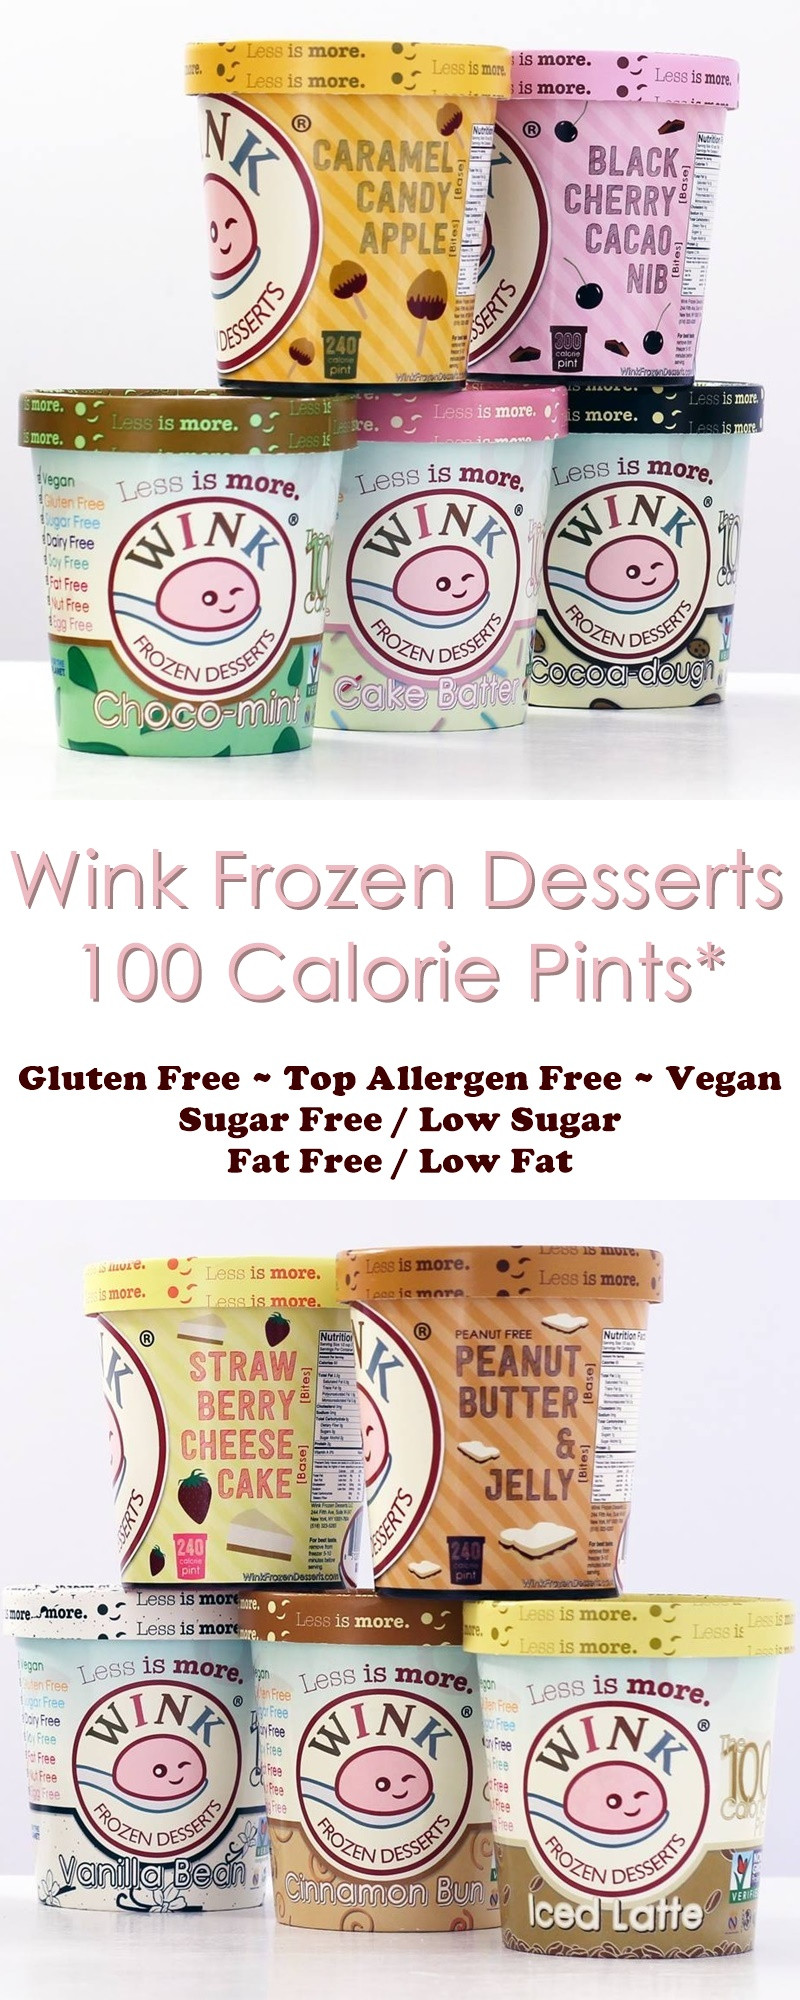 Wink Frozen Desserts
 Wink Frozen Desserts Review The 100 Calorie Pints